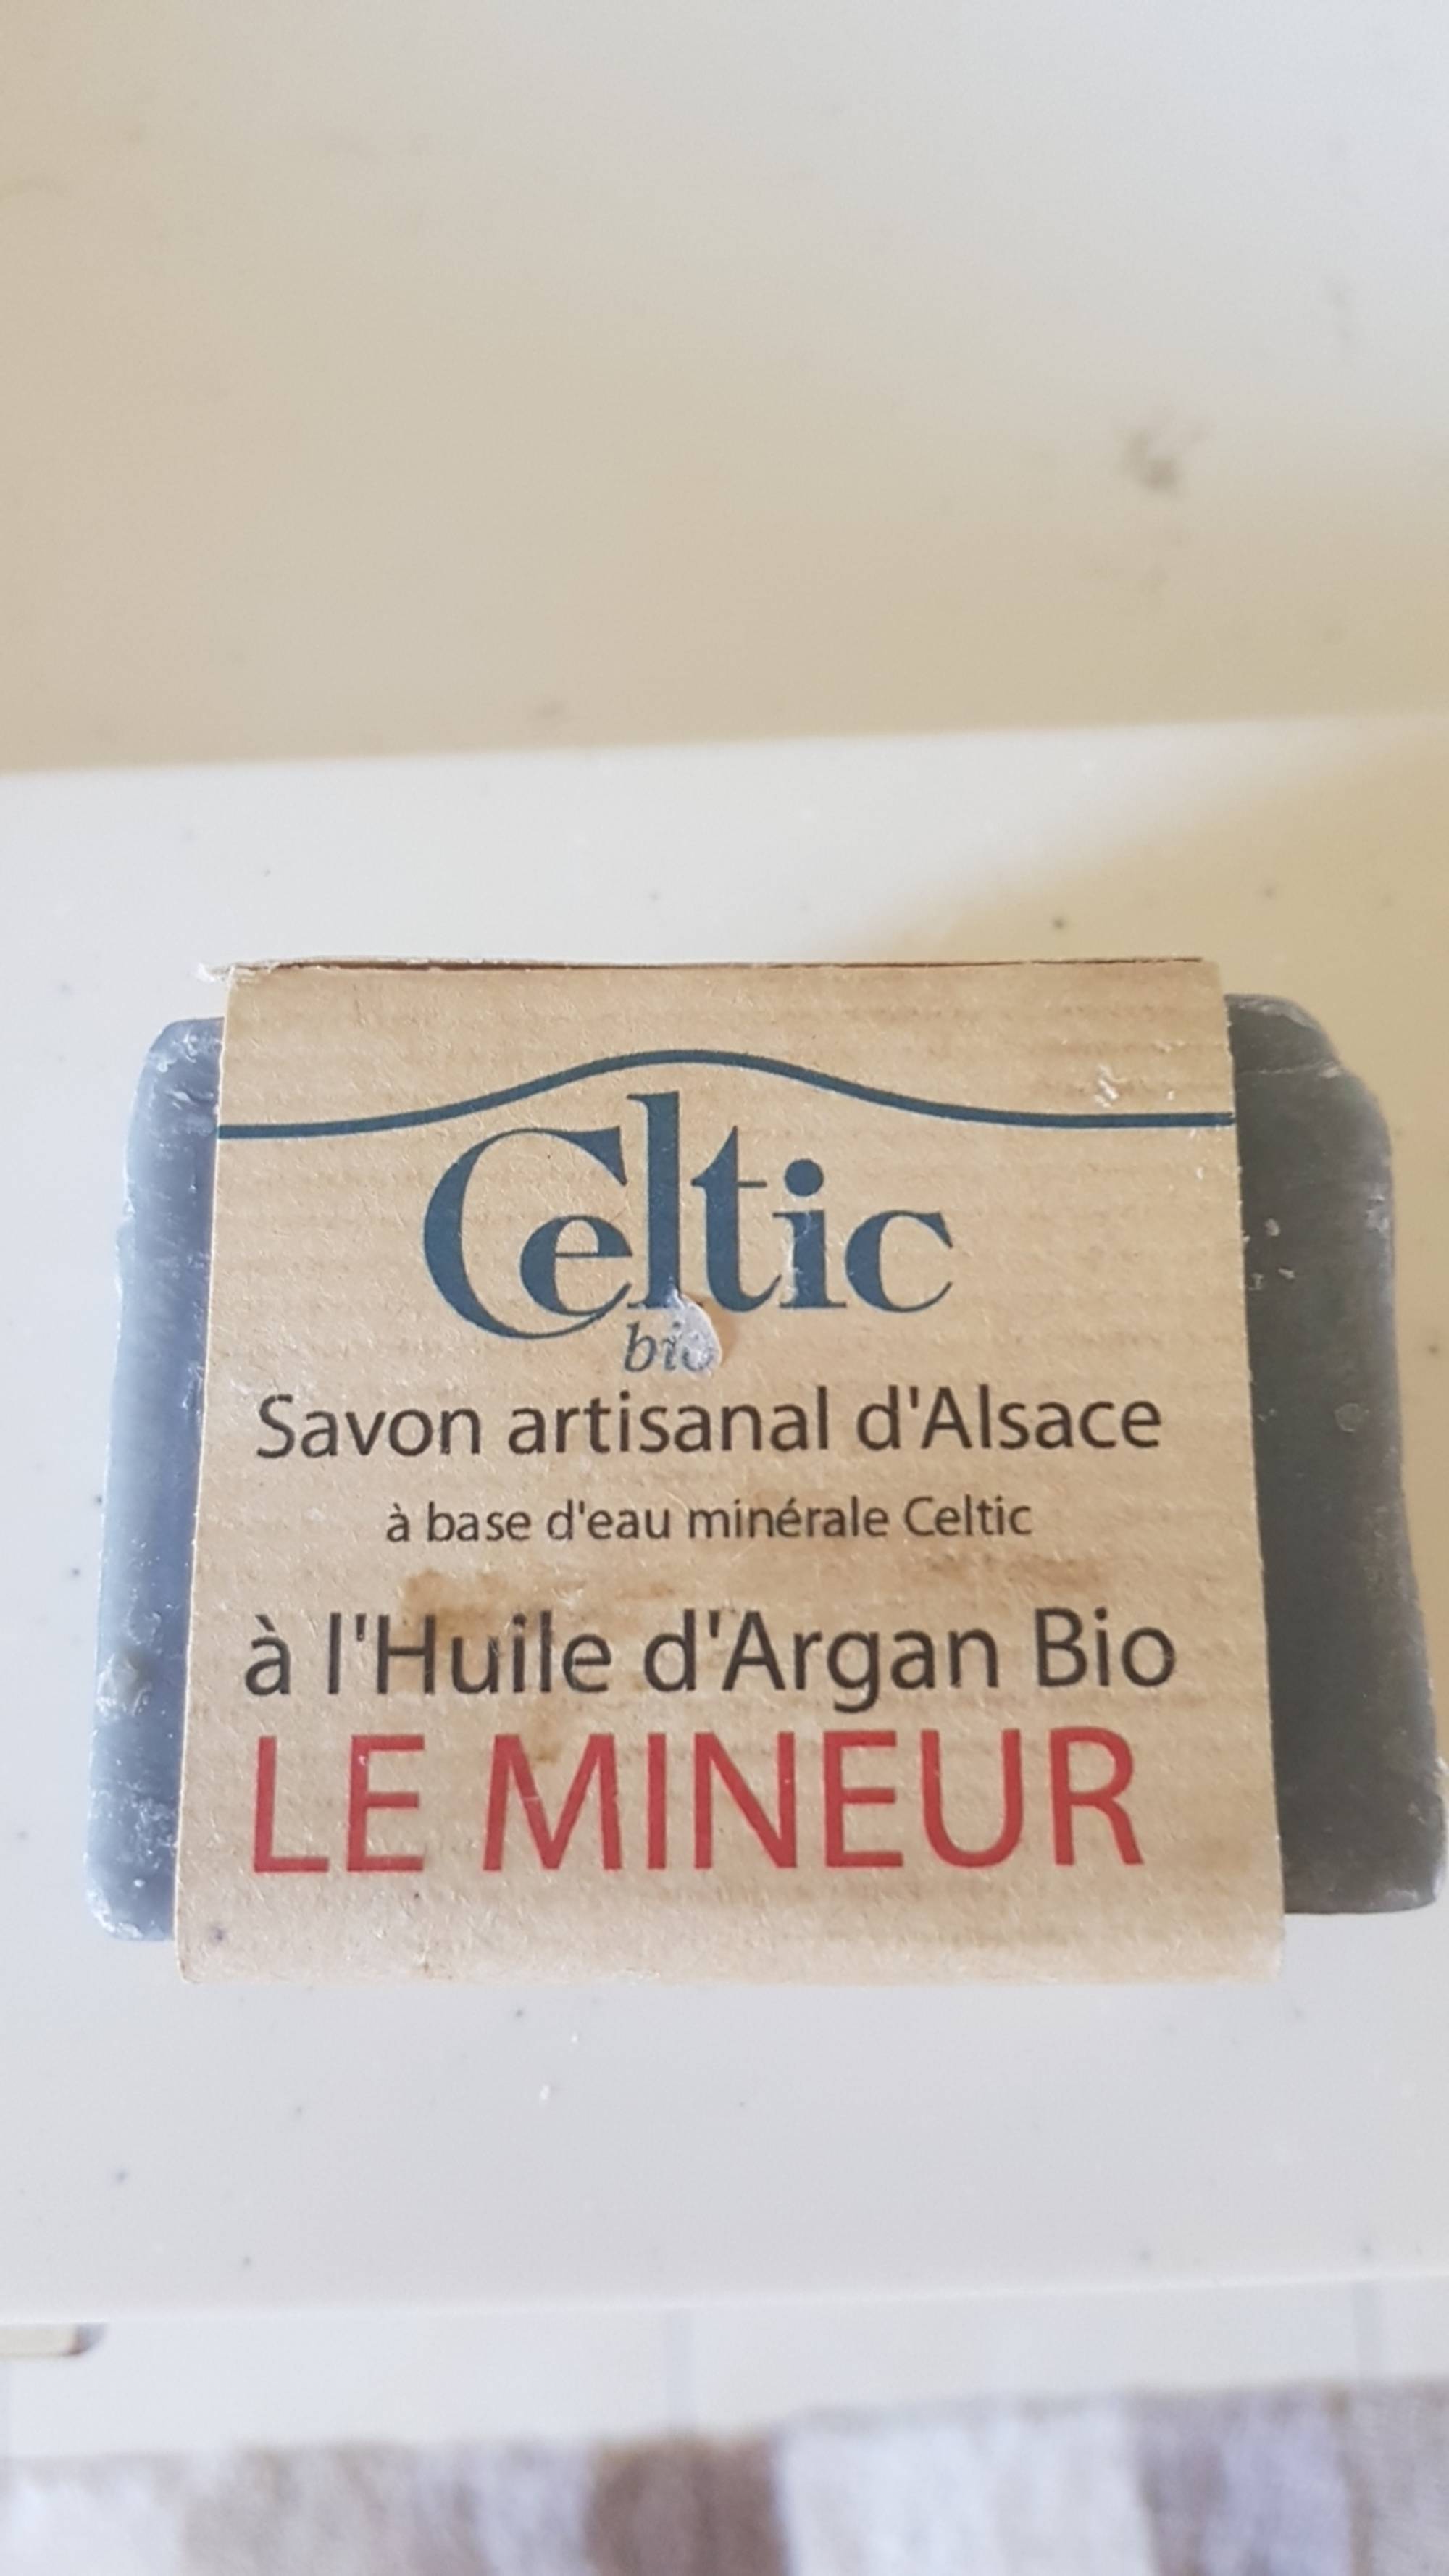 CELTIC BIO - Le mineur - Savon artisanal d'Alsace